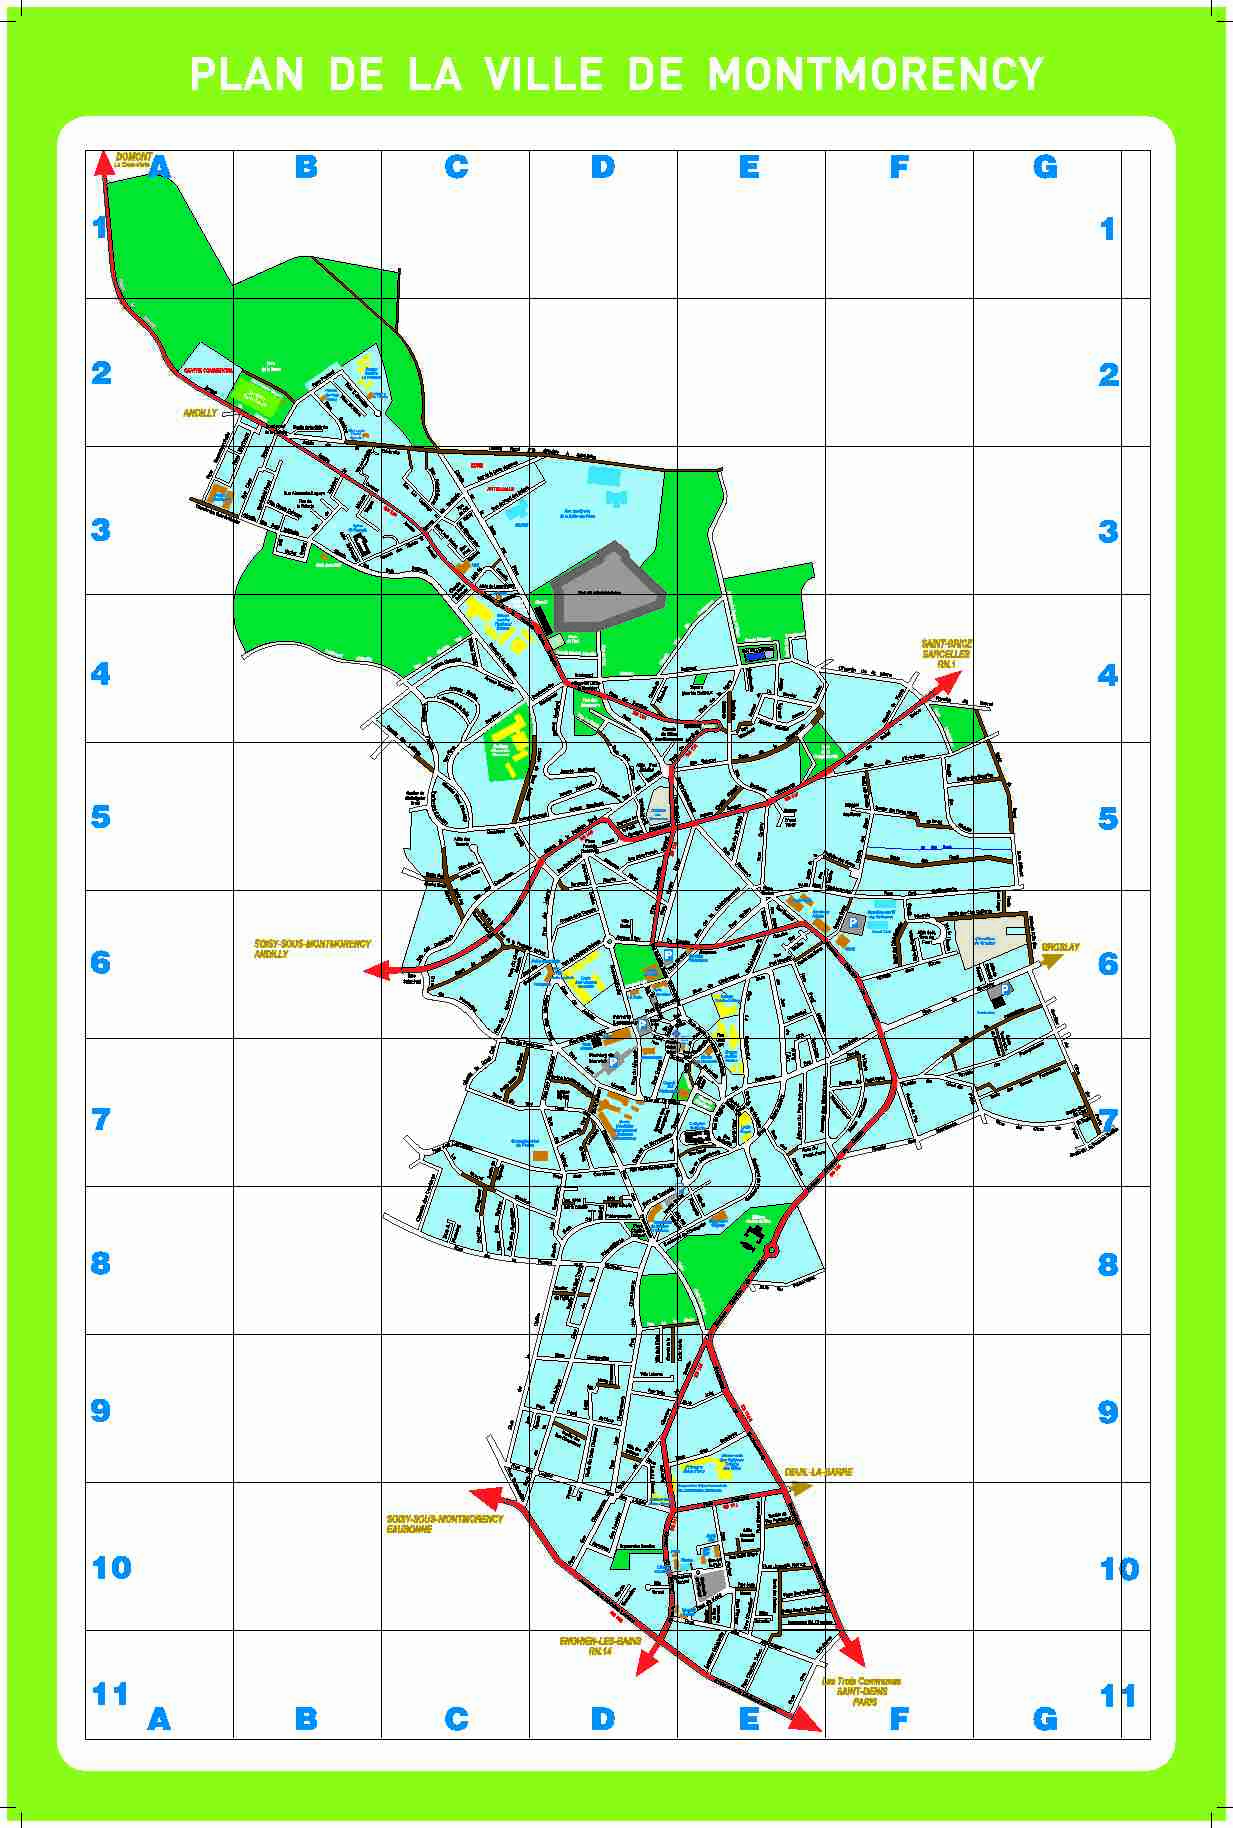 [PDF] Plan de la ville de montmorency - Accessiblenet